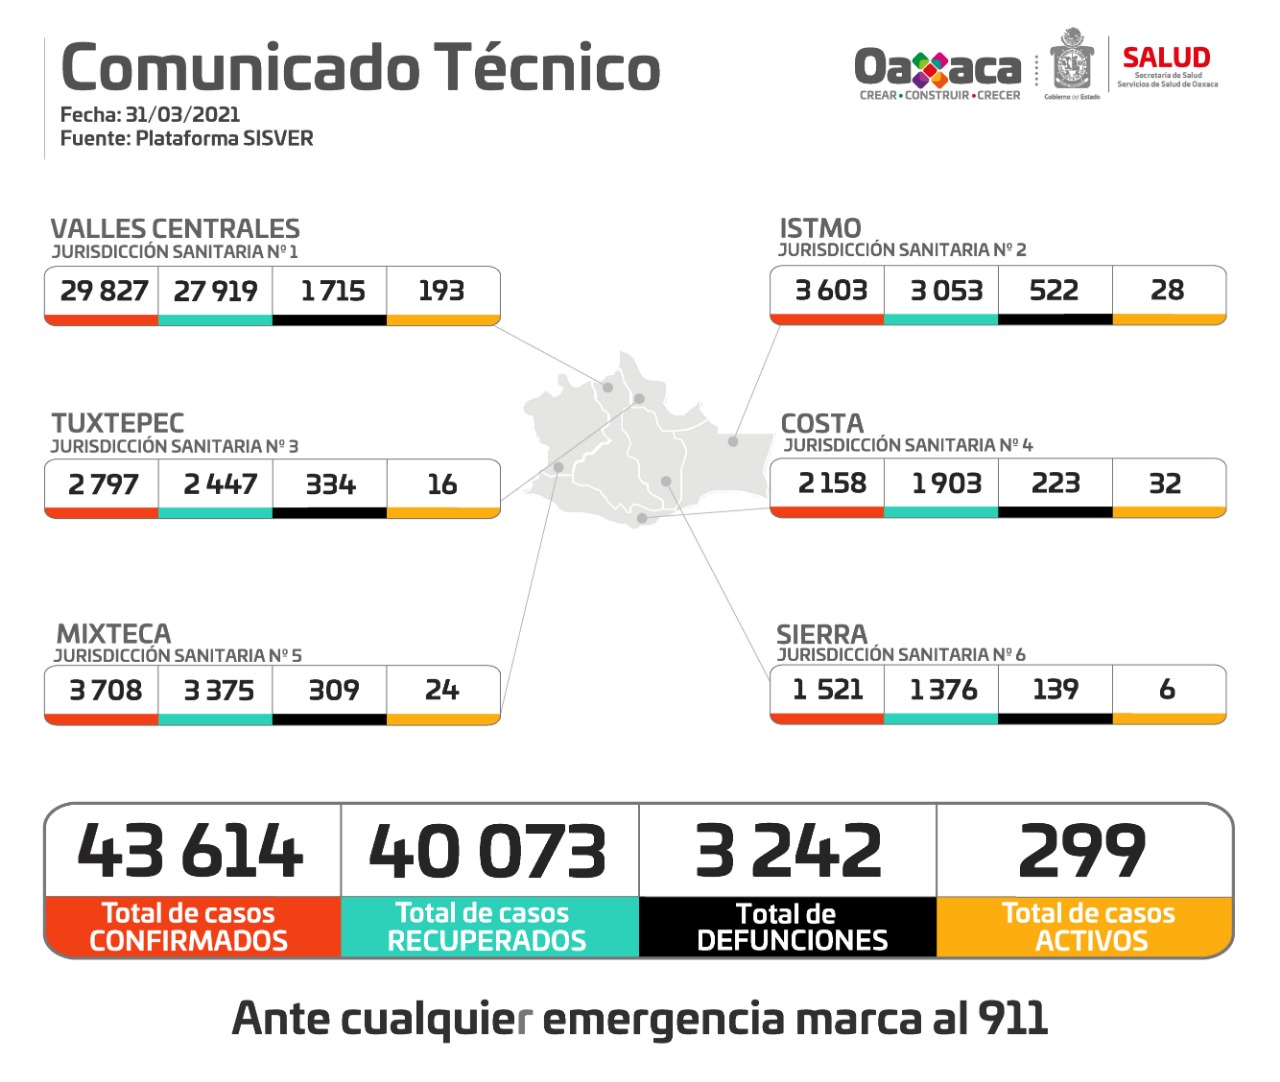 Cierra marzo con 75 casos nuevos y 43 mil 614 acumulados de Covid-19 en Oaxaca